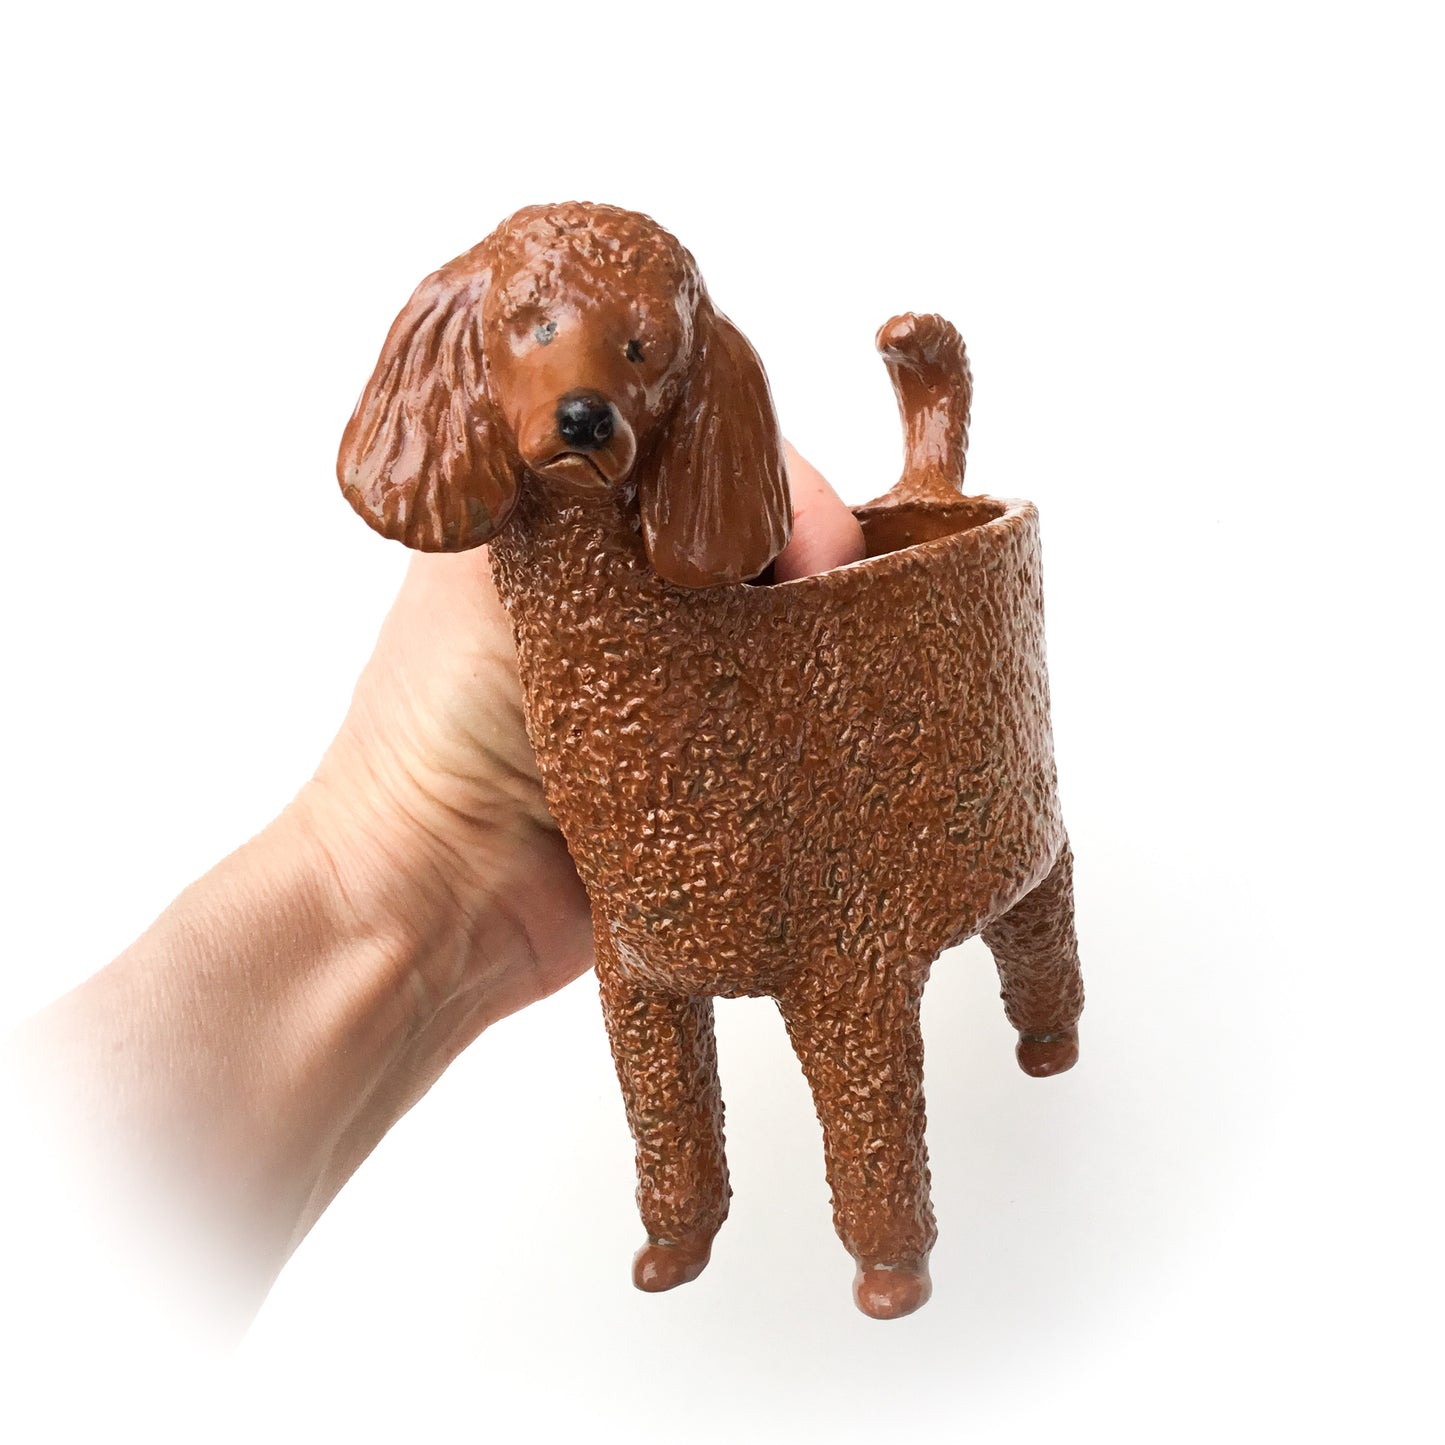 Standard Poodle Dog Planter - Ceramic Dog Plant Pot